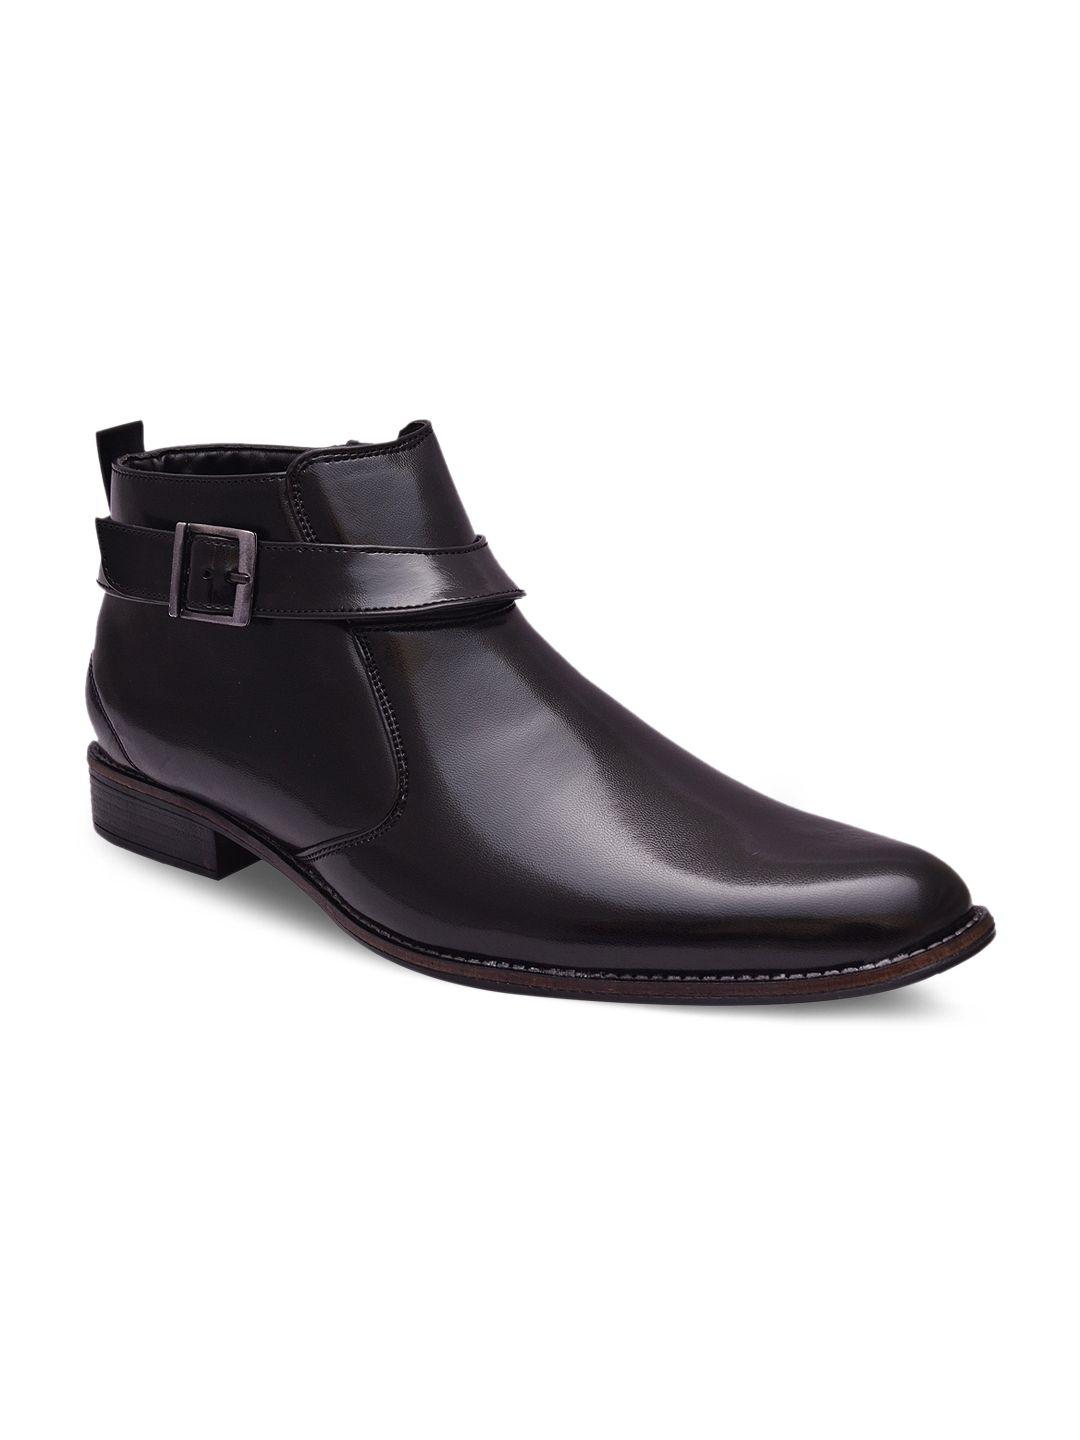 sir corbett men black semiformal shoes